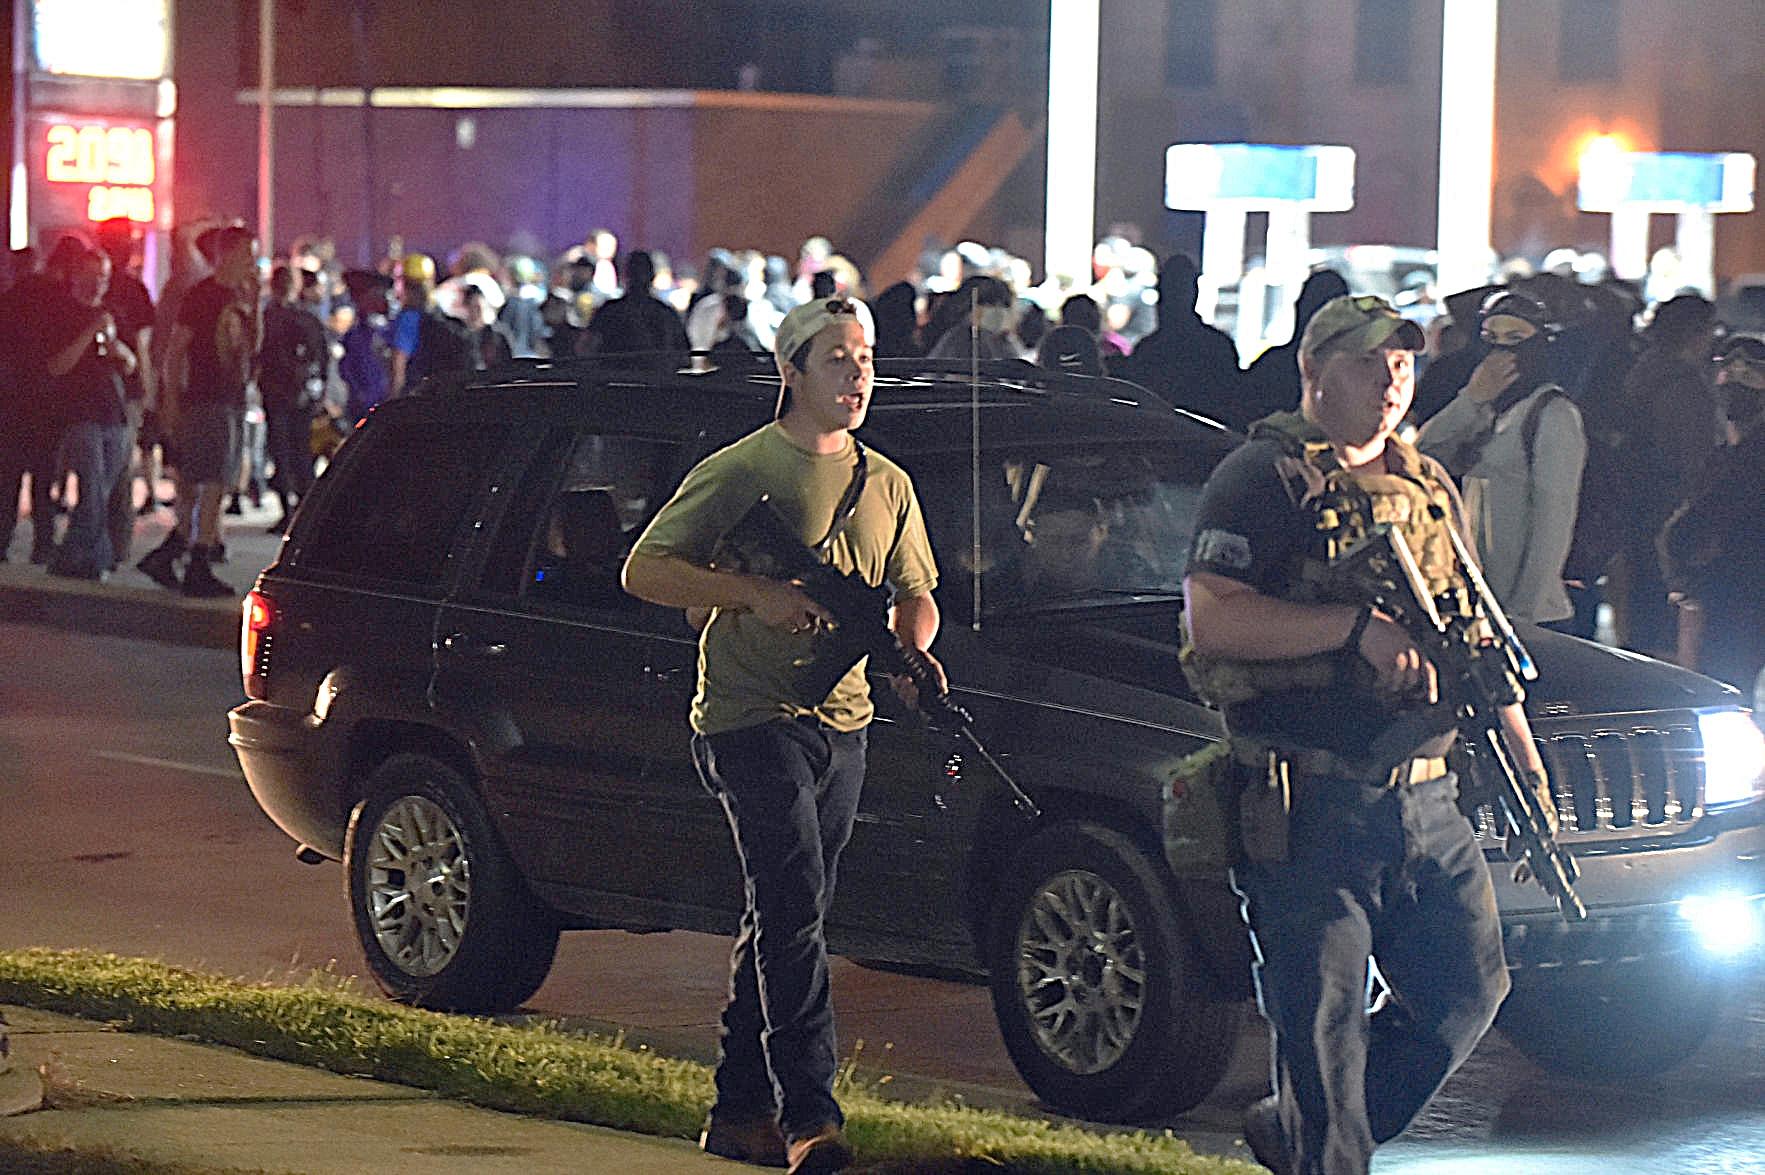 Kyle Rittenhouse a la izquierda en la foto, 25 de agosto, poco antes de los asesinatos. Foto: Adam Rogan, The Journal Times / AP